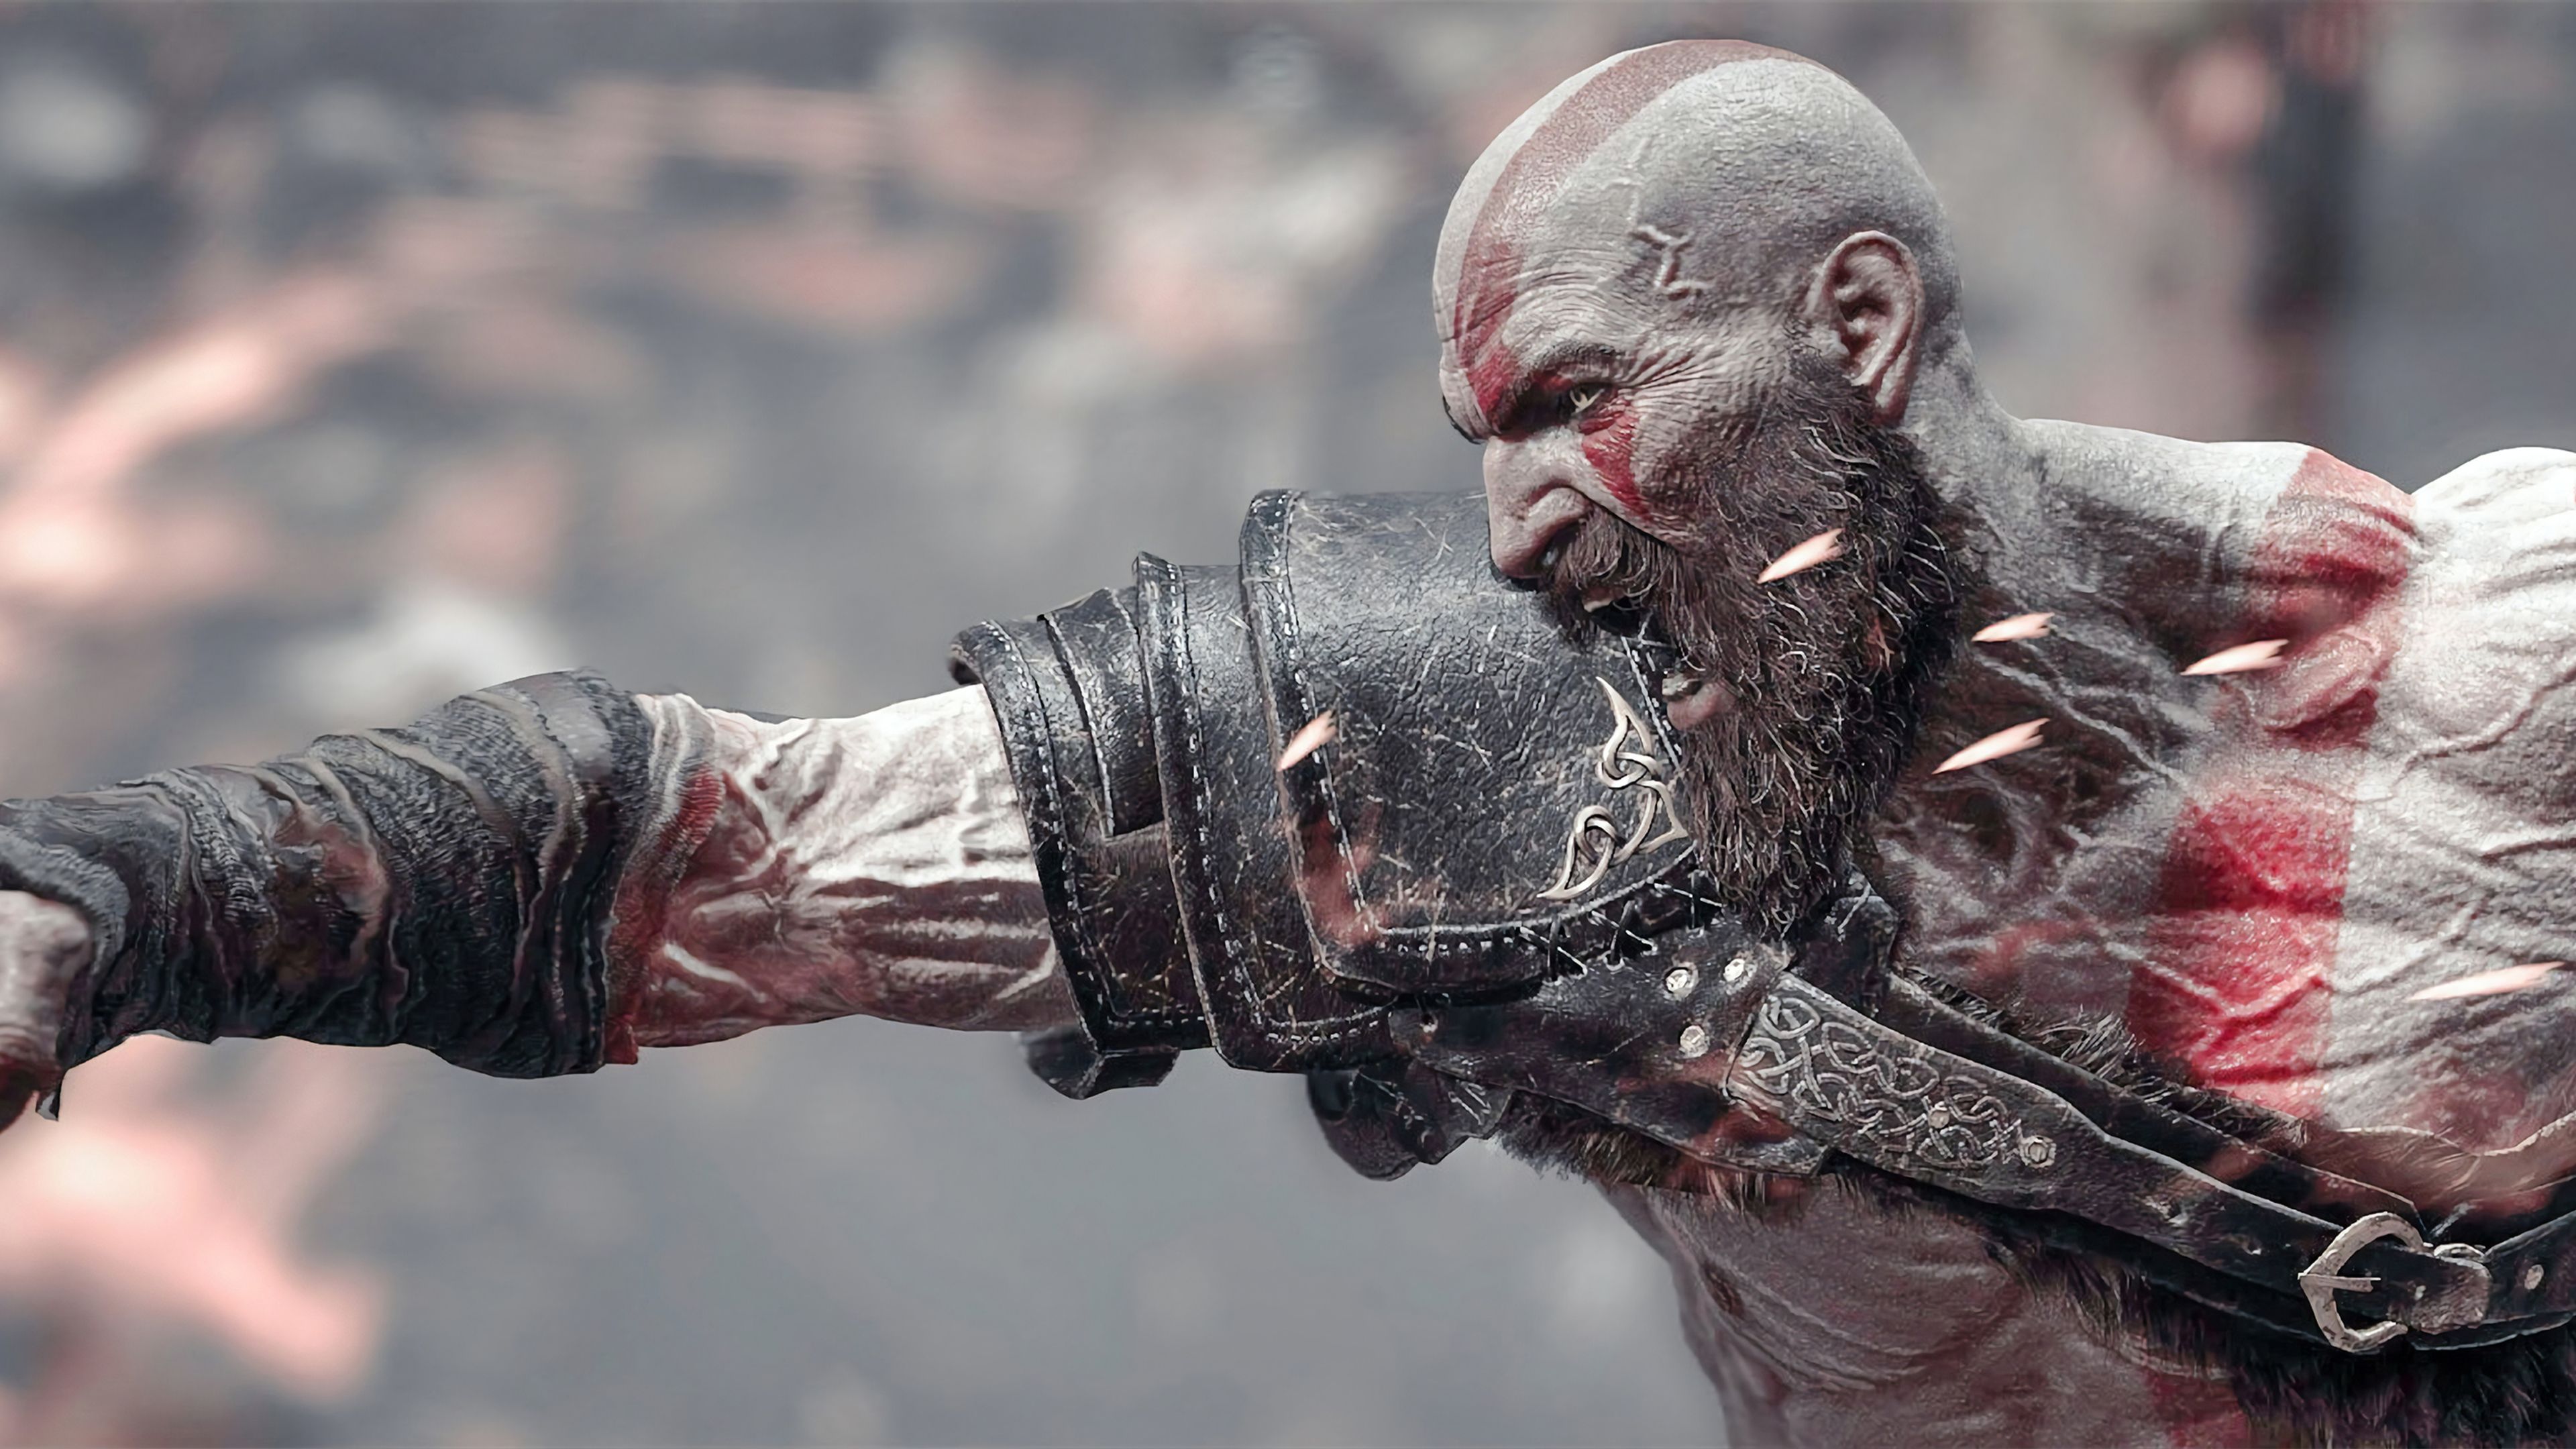 Hãy chiêm ngưỡng những hình nền 4K đầy mạnh mẽ của Kratos trên Wallpaper Cave! Tận hưởng trải nghiệm chân thật với hình ảnh sắc nét nhất và đường nét tinh tế trên màn hình của bạn.